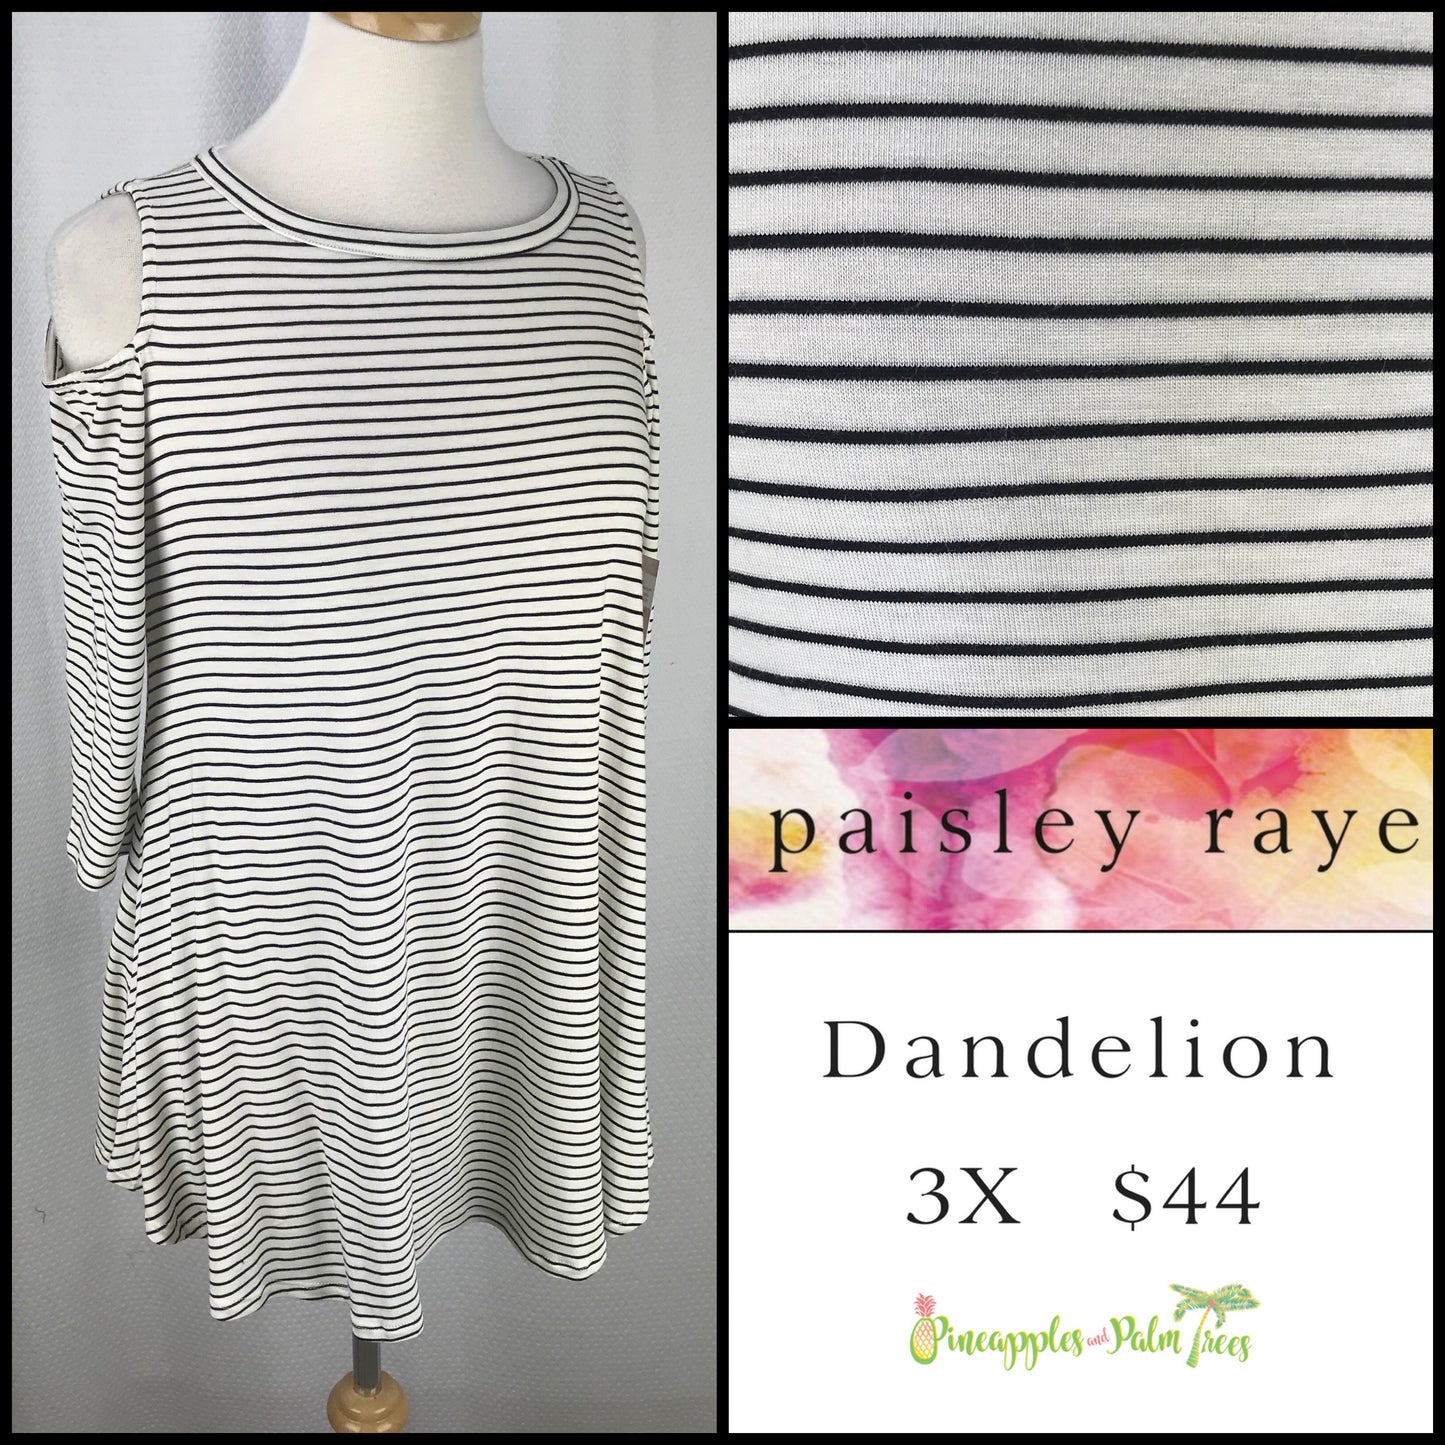 Top: Dandelion 3X - white stripes